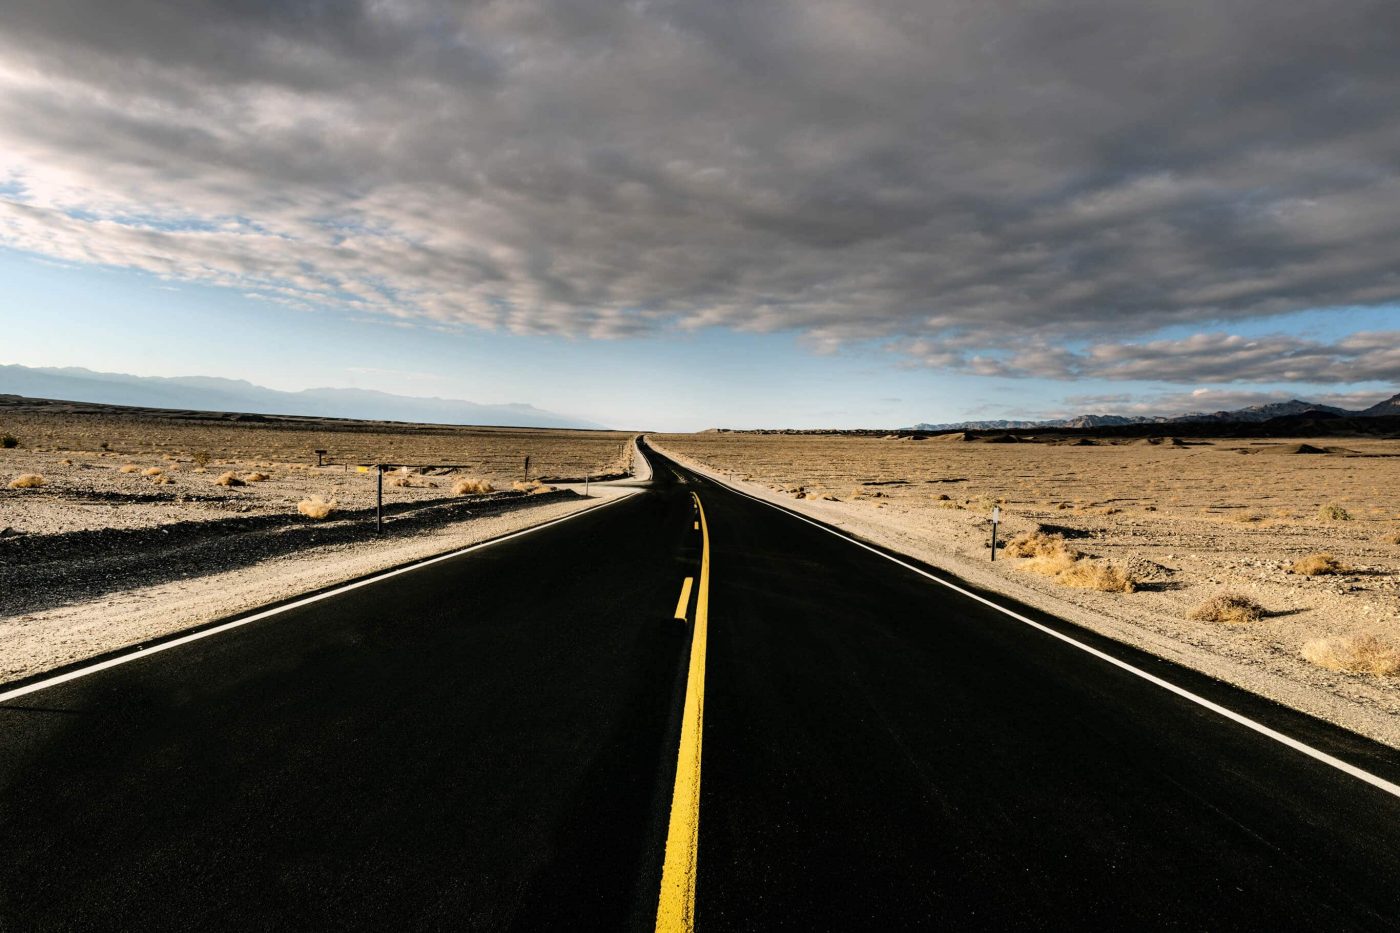 Road through Death Valley, California by Carol Highsmith